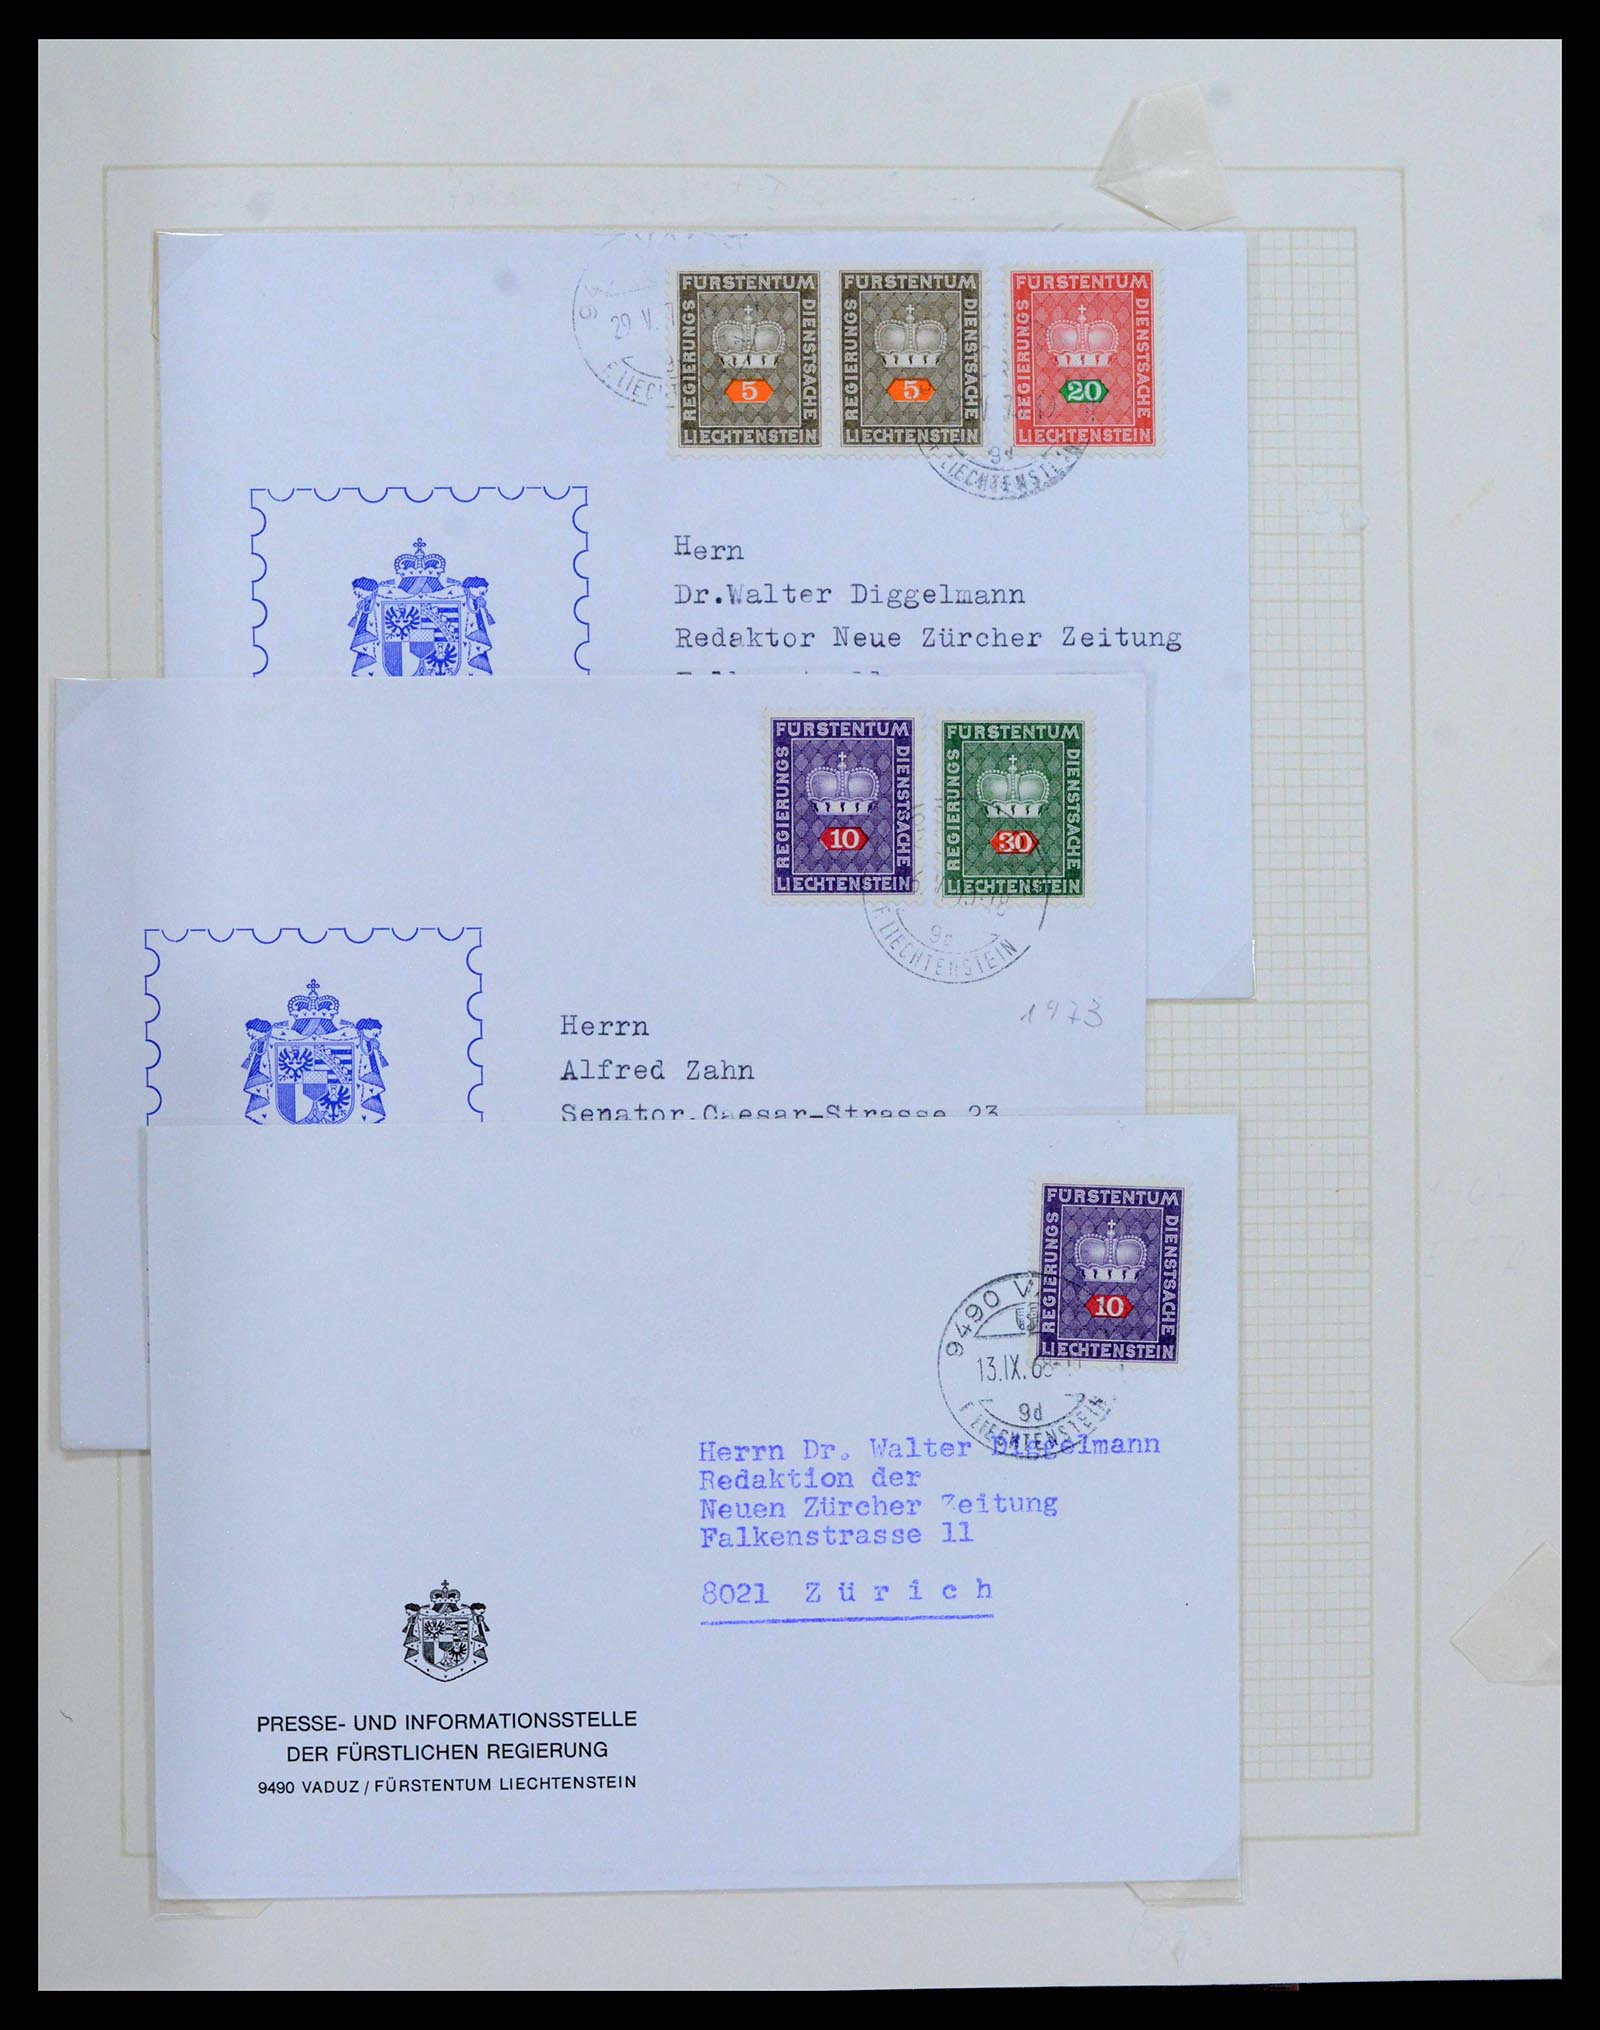 38204 0044 - Stamp collection 38204 Liechtenstein service covers 1932-1989.